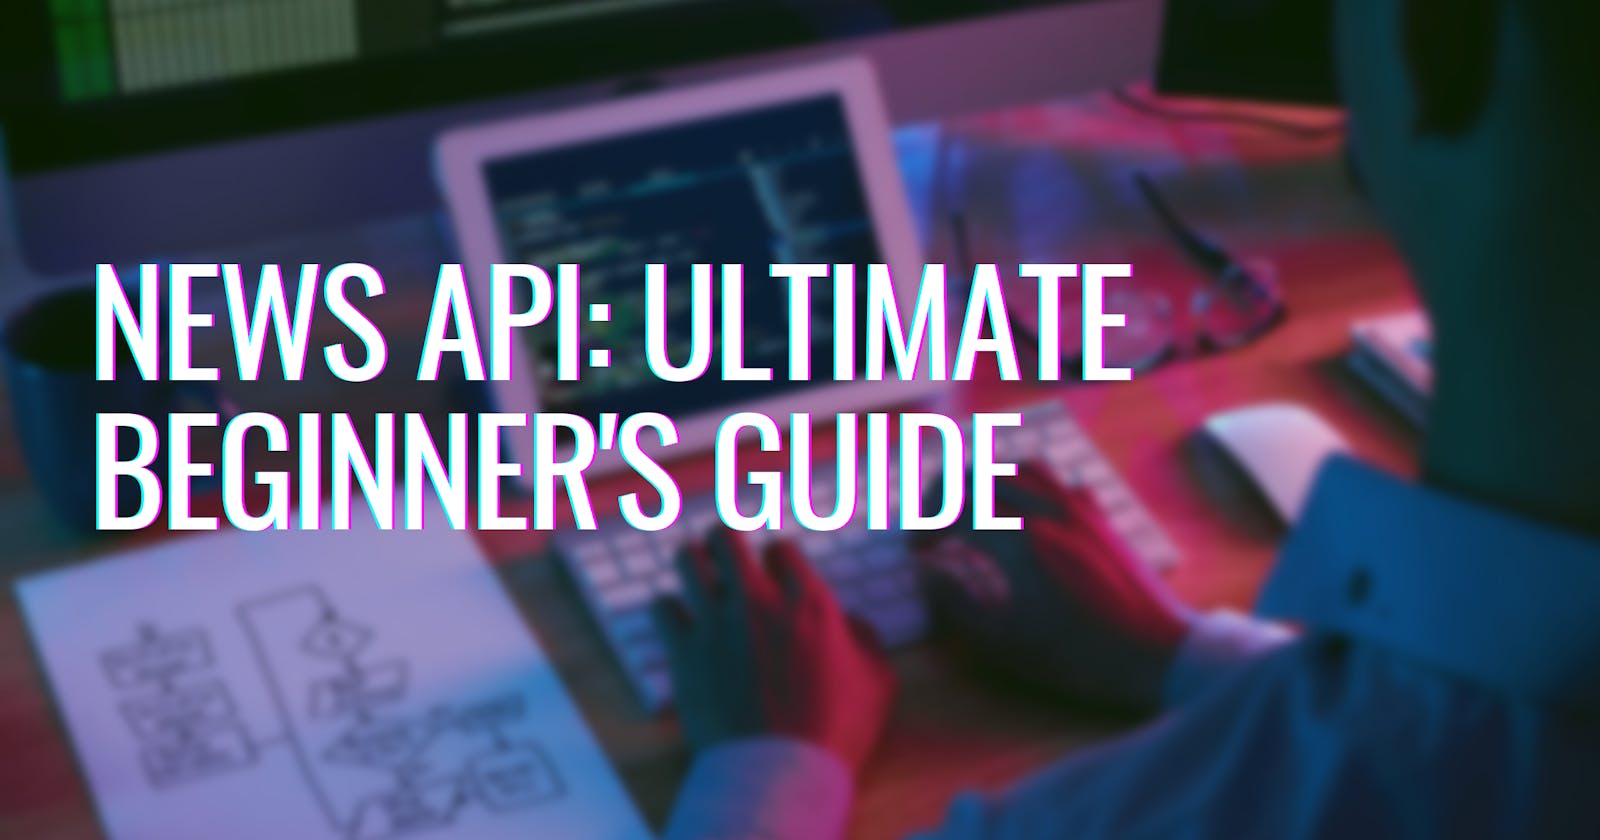 News API: Ultimate Beginner’s guide